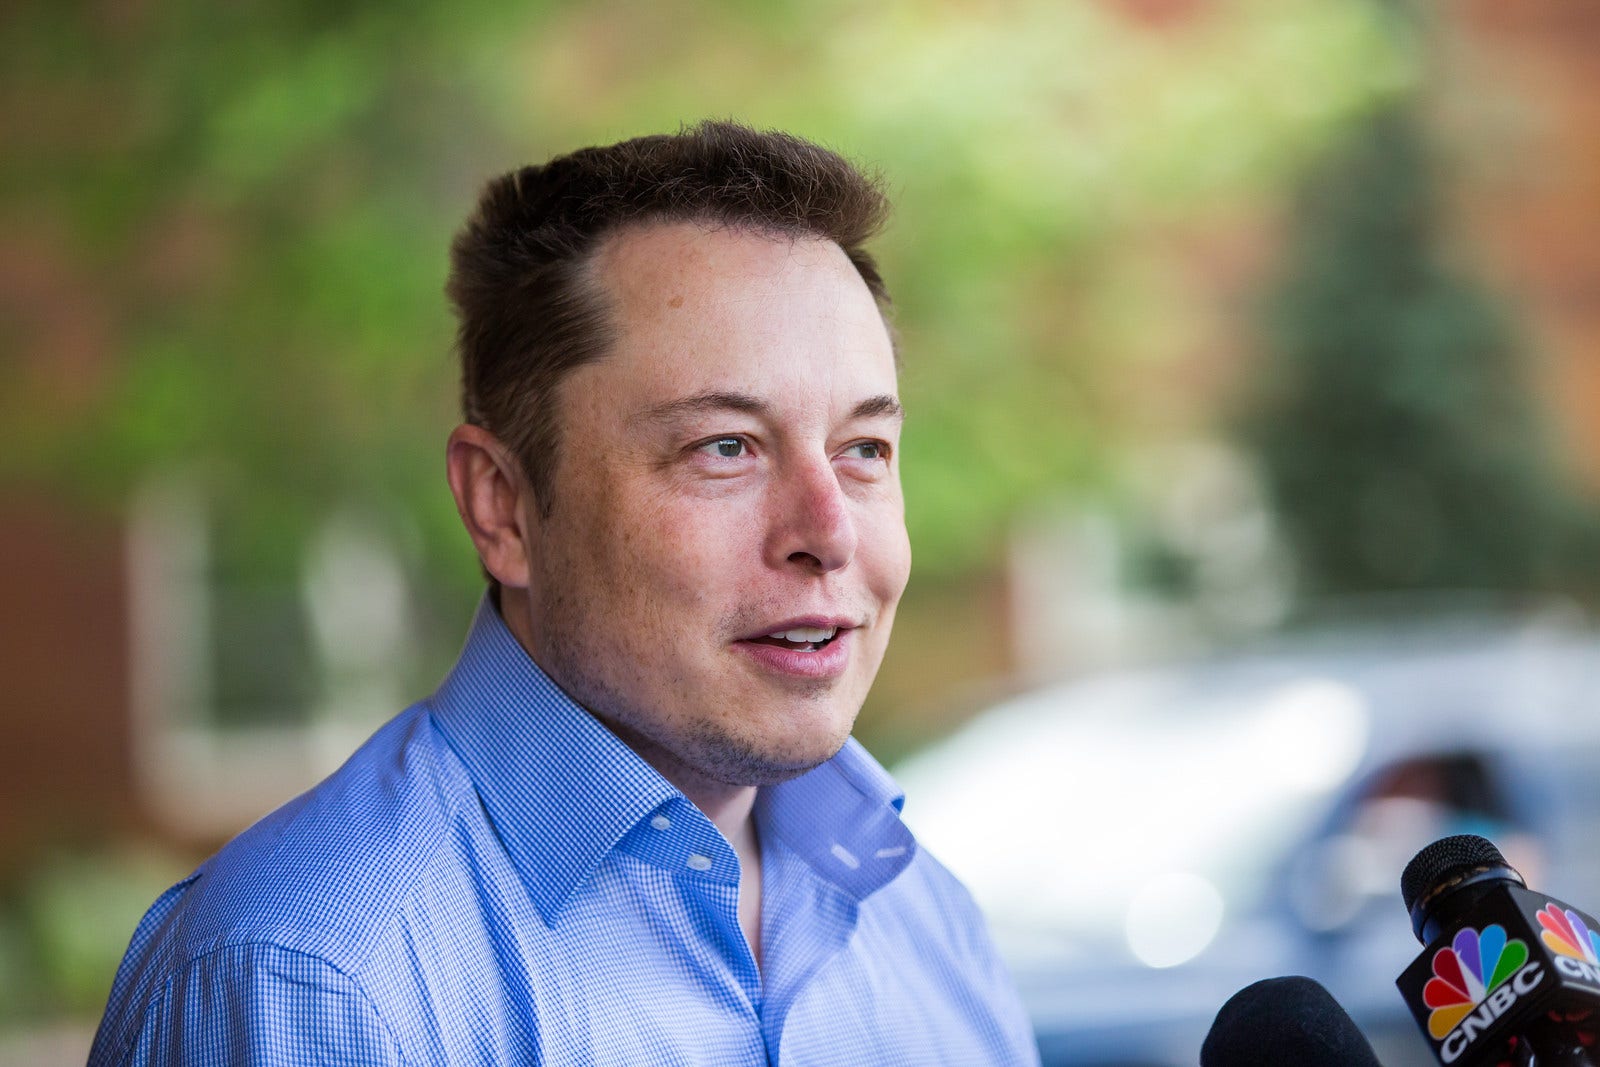 Does Elon Musk Believe In Ghosts? 'Sometimes It Feels Like...'